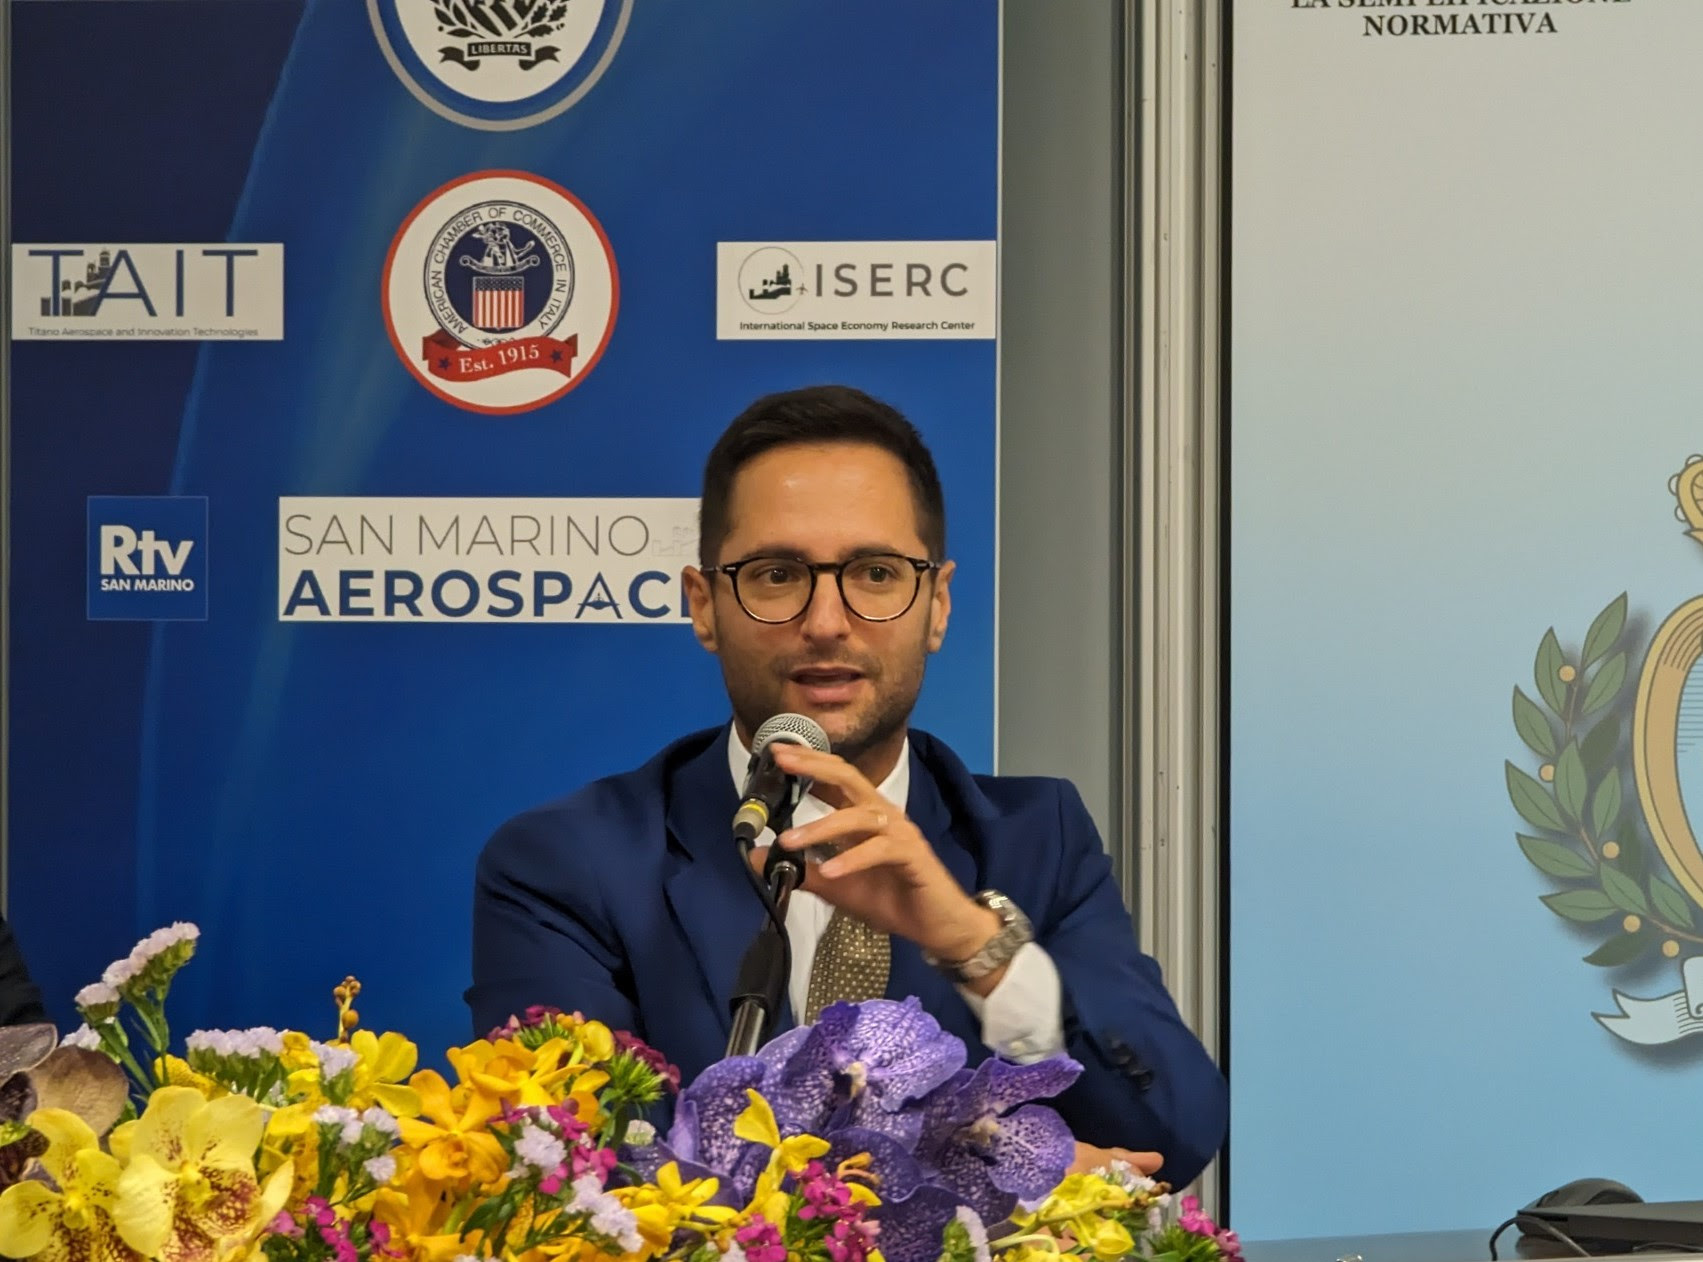 San Marino Aerospace, bilancio positivo per la prima edizione. Righi: “Alto livello delle aziende partecipanti”